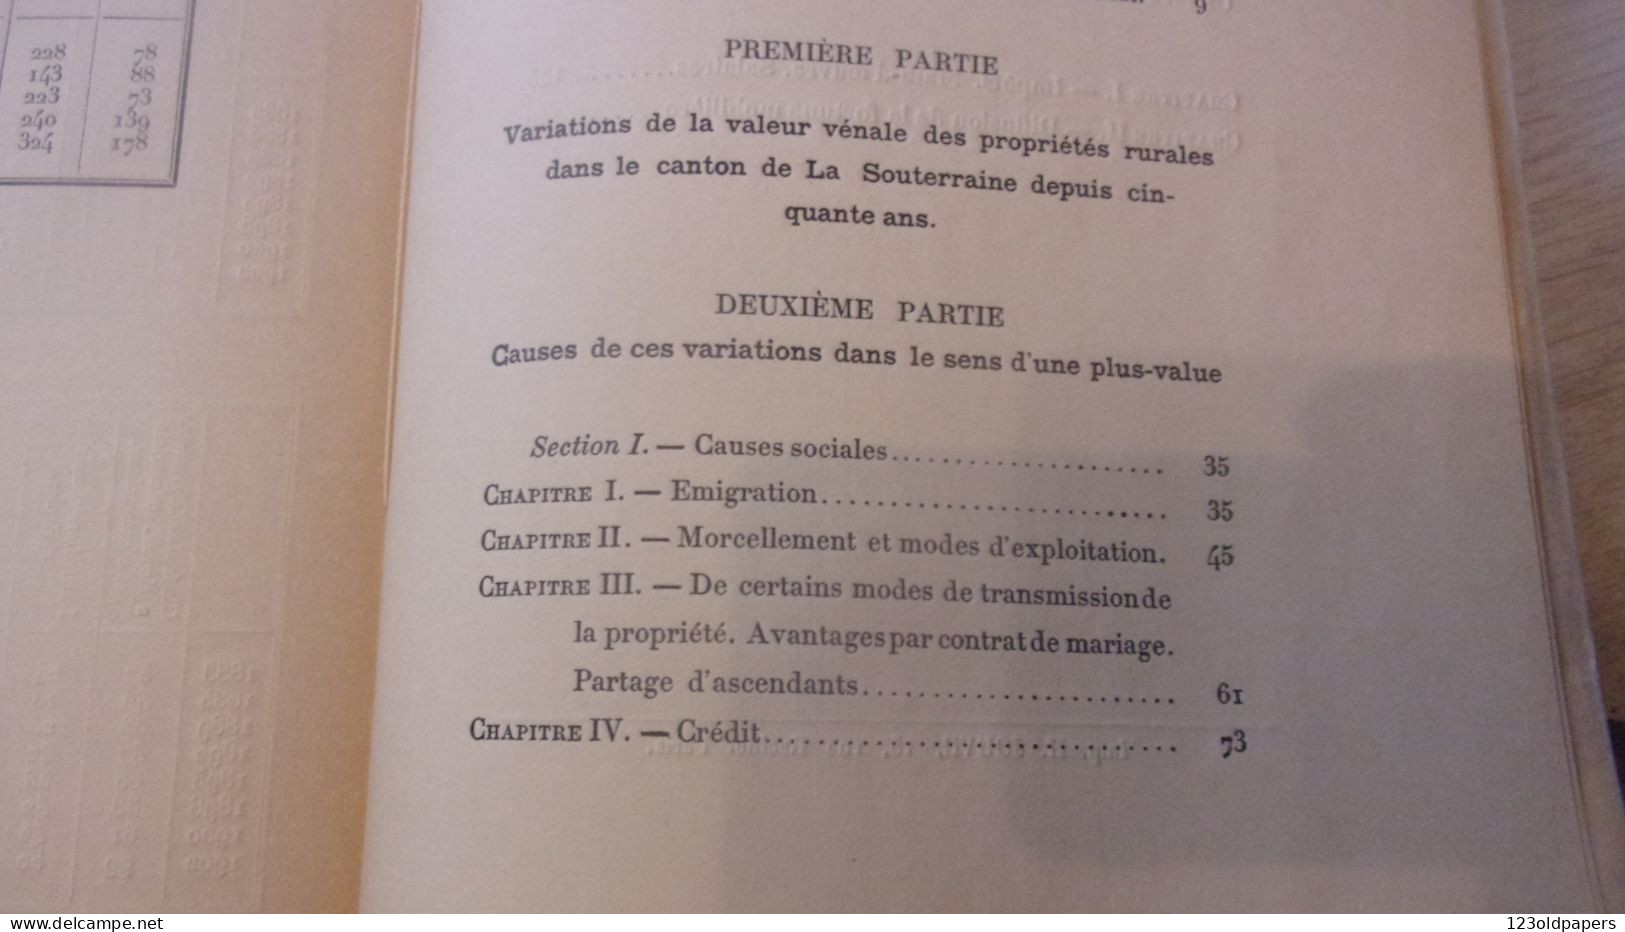 CREUSE 1905  ALB MONTAUDON  DE LA PROPRIETE RURALE  ET CAUSES  VARIATIONS DE SA VALEUR DANS CANTON LA SOUTERRAINE - Limousin